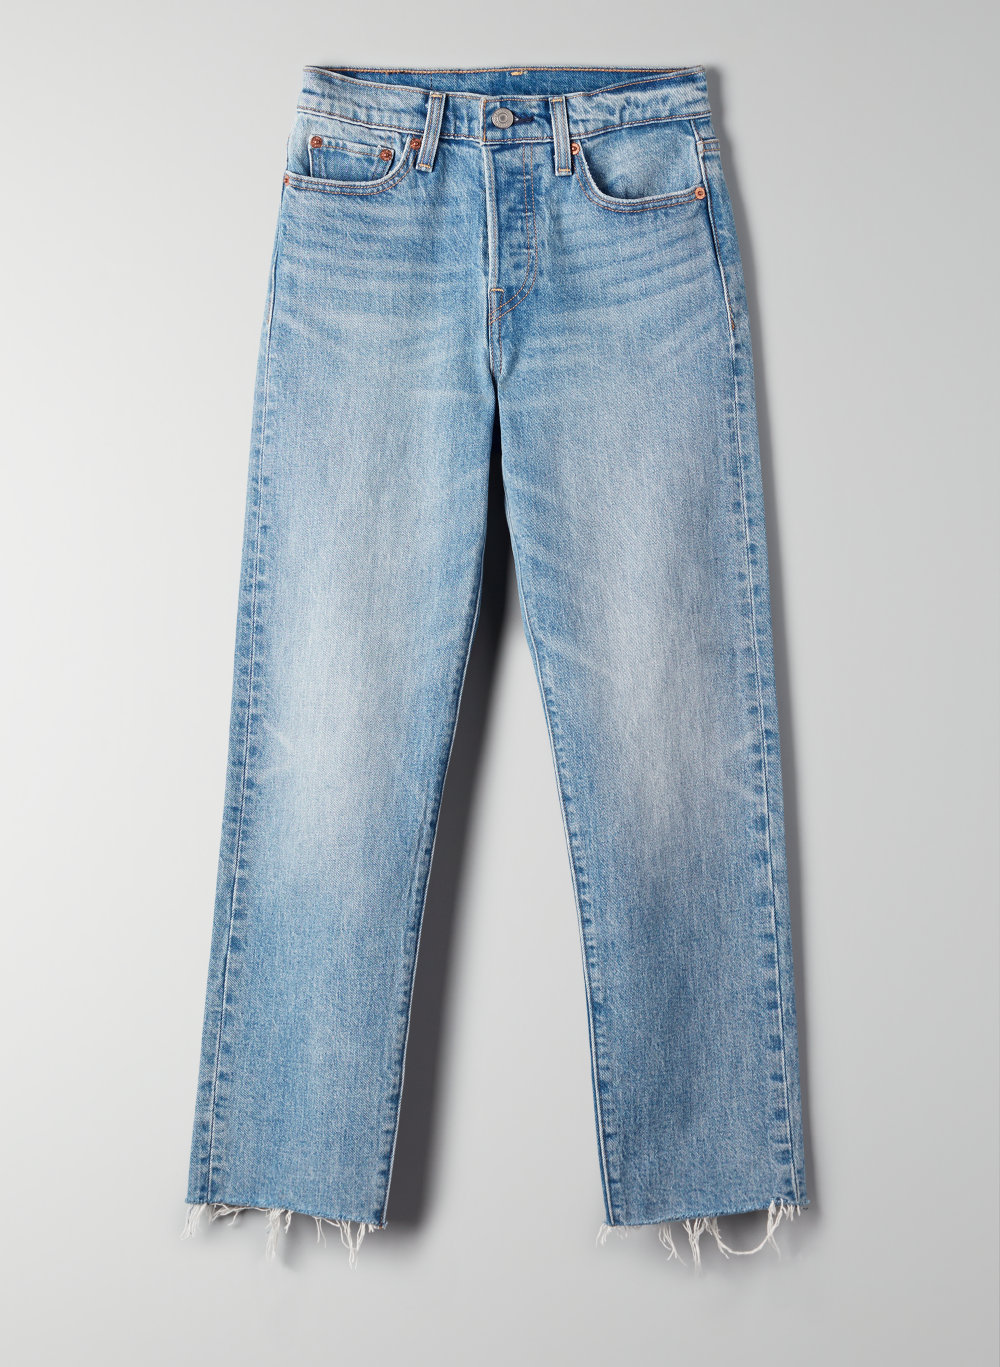 levis rough jeans